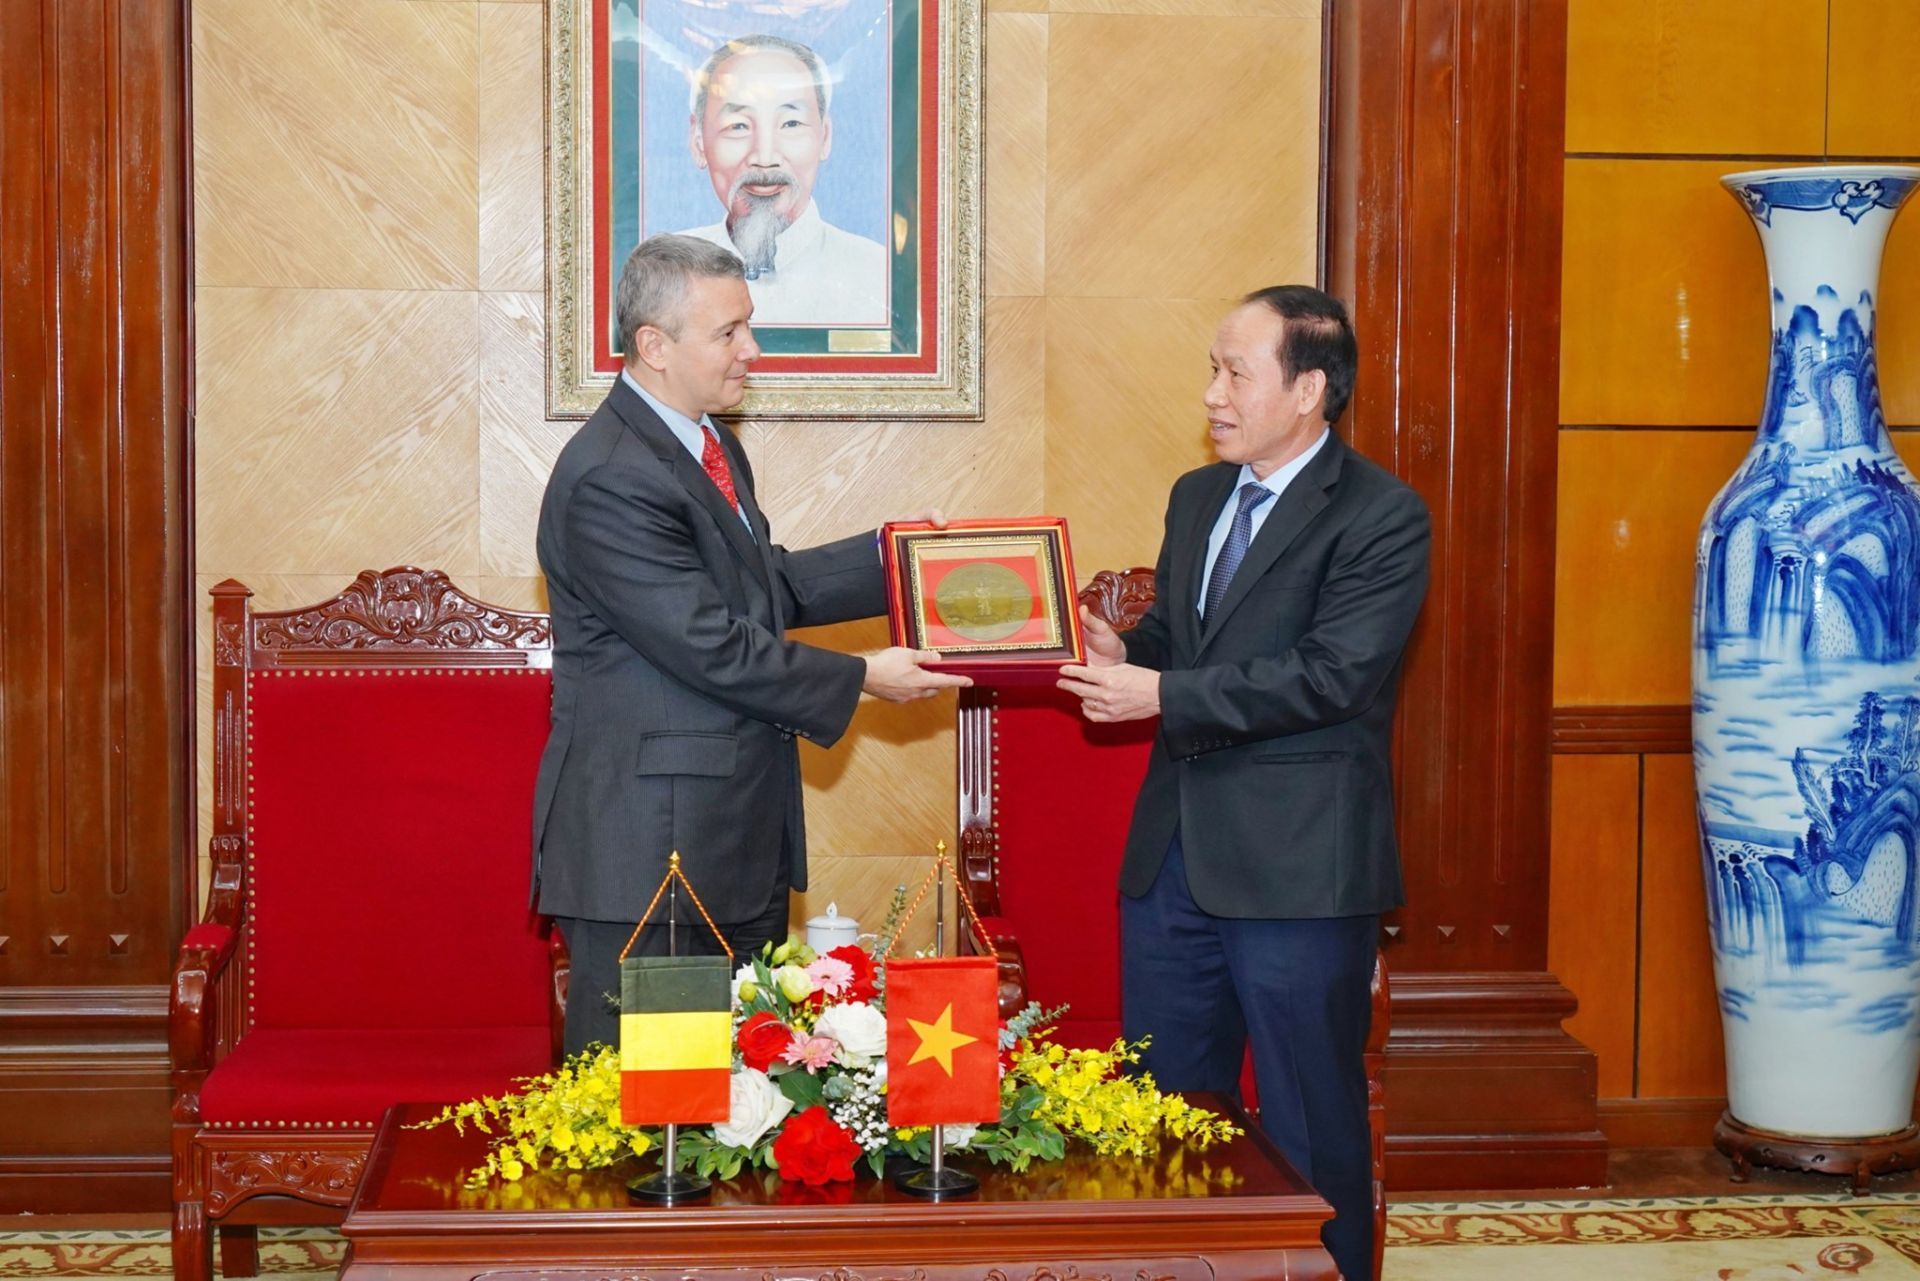 Bí thư Thành  ủy Lê Tiến Châu và Đại sứ Vương quốc Bỉ tại Việt Nam Karl Van den Bossche trao quà lưu niệm.